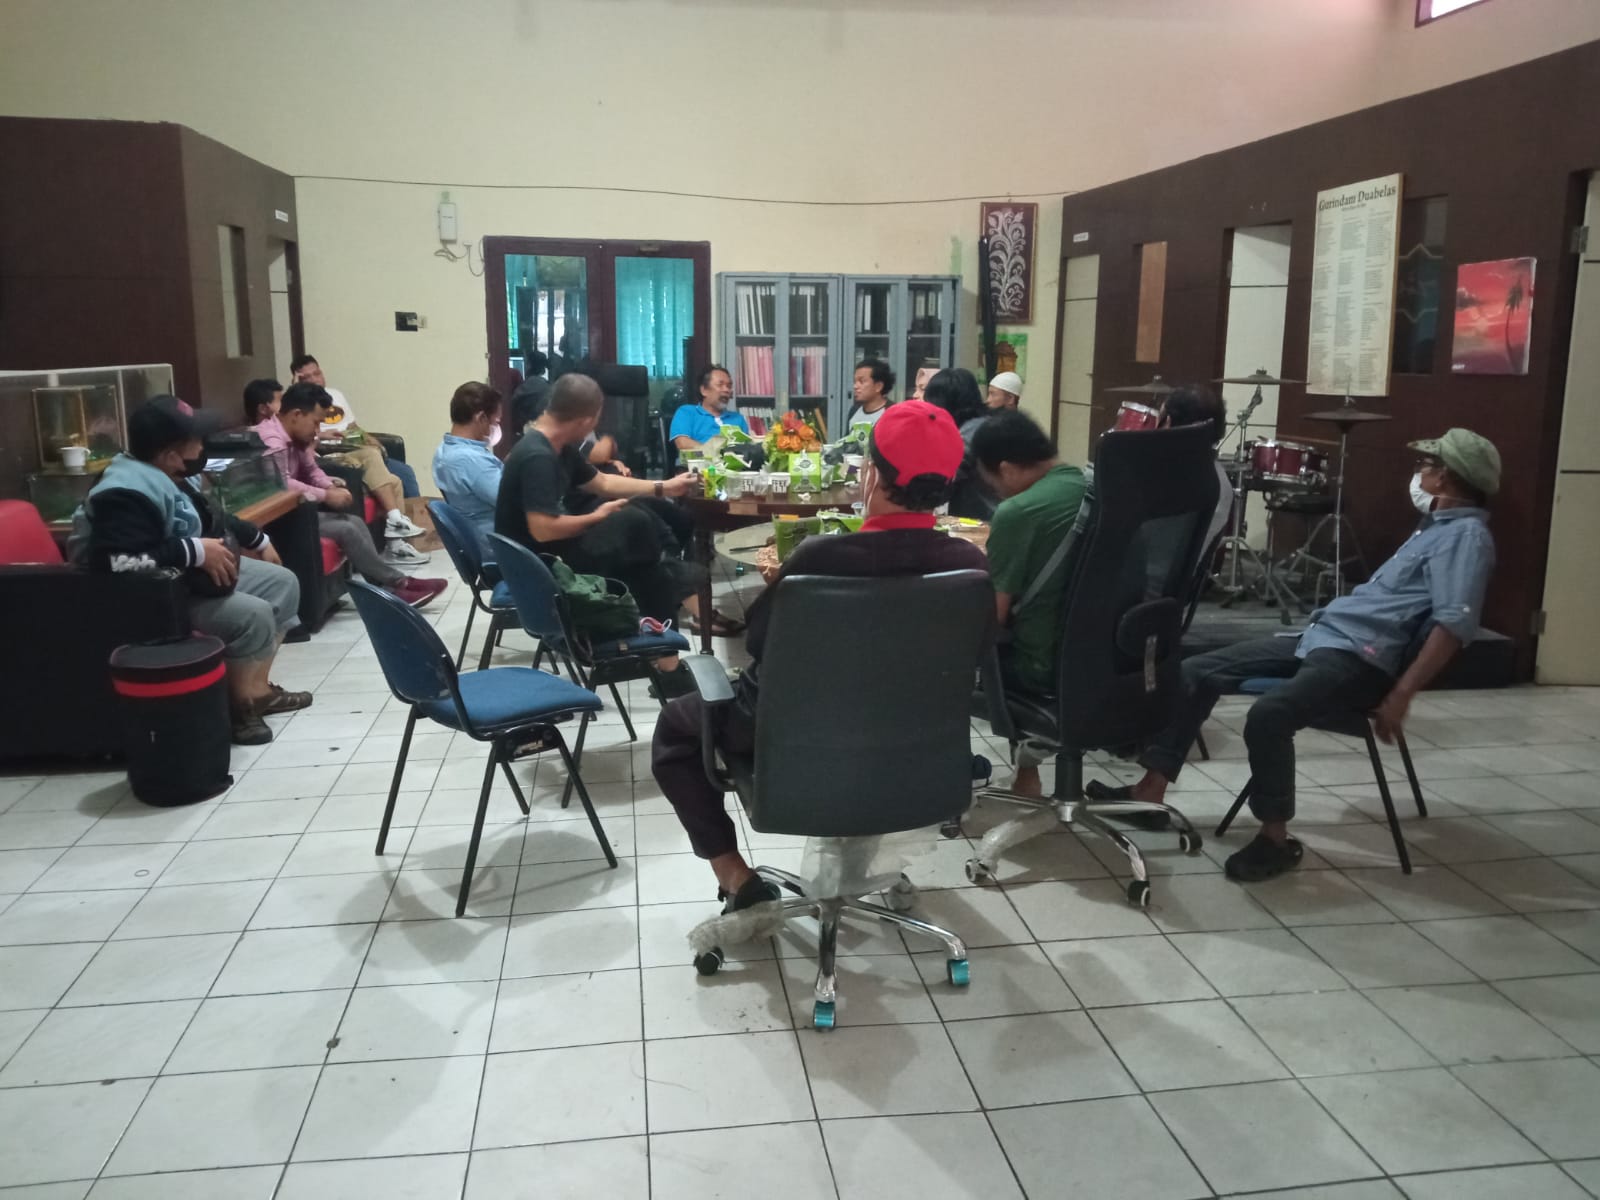 Dinas Kebudayaan Riau Gelar Workshop Tari, Musik dan Teater